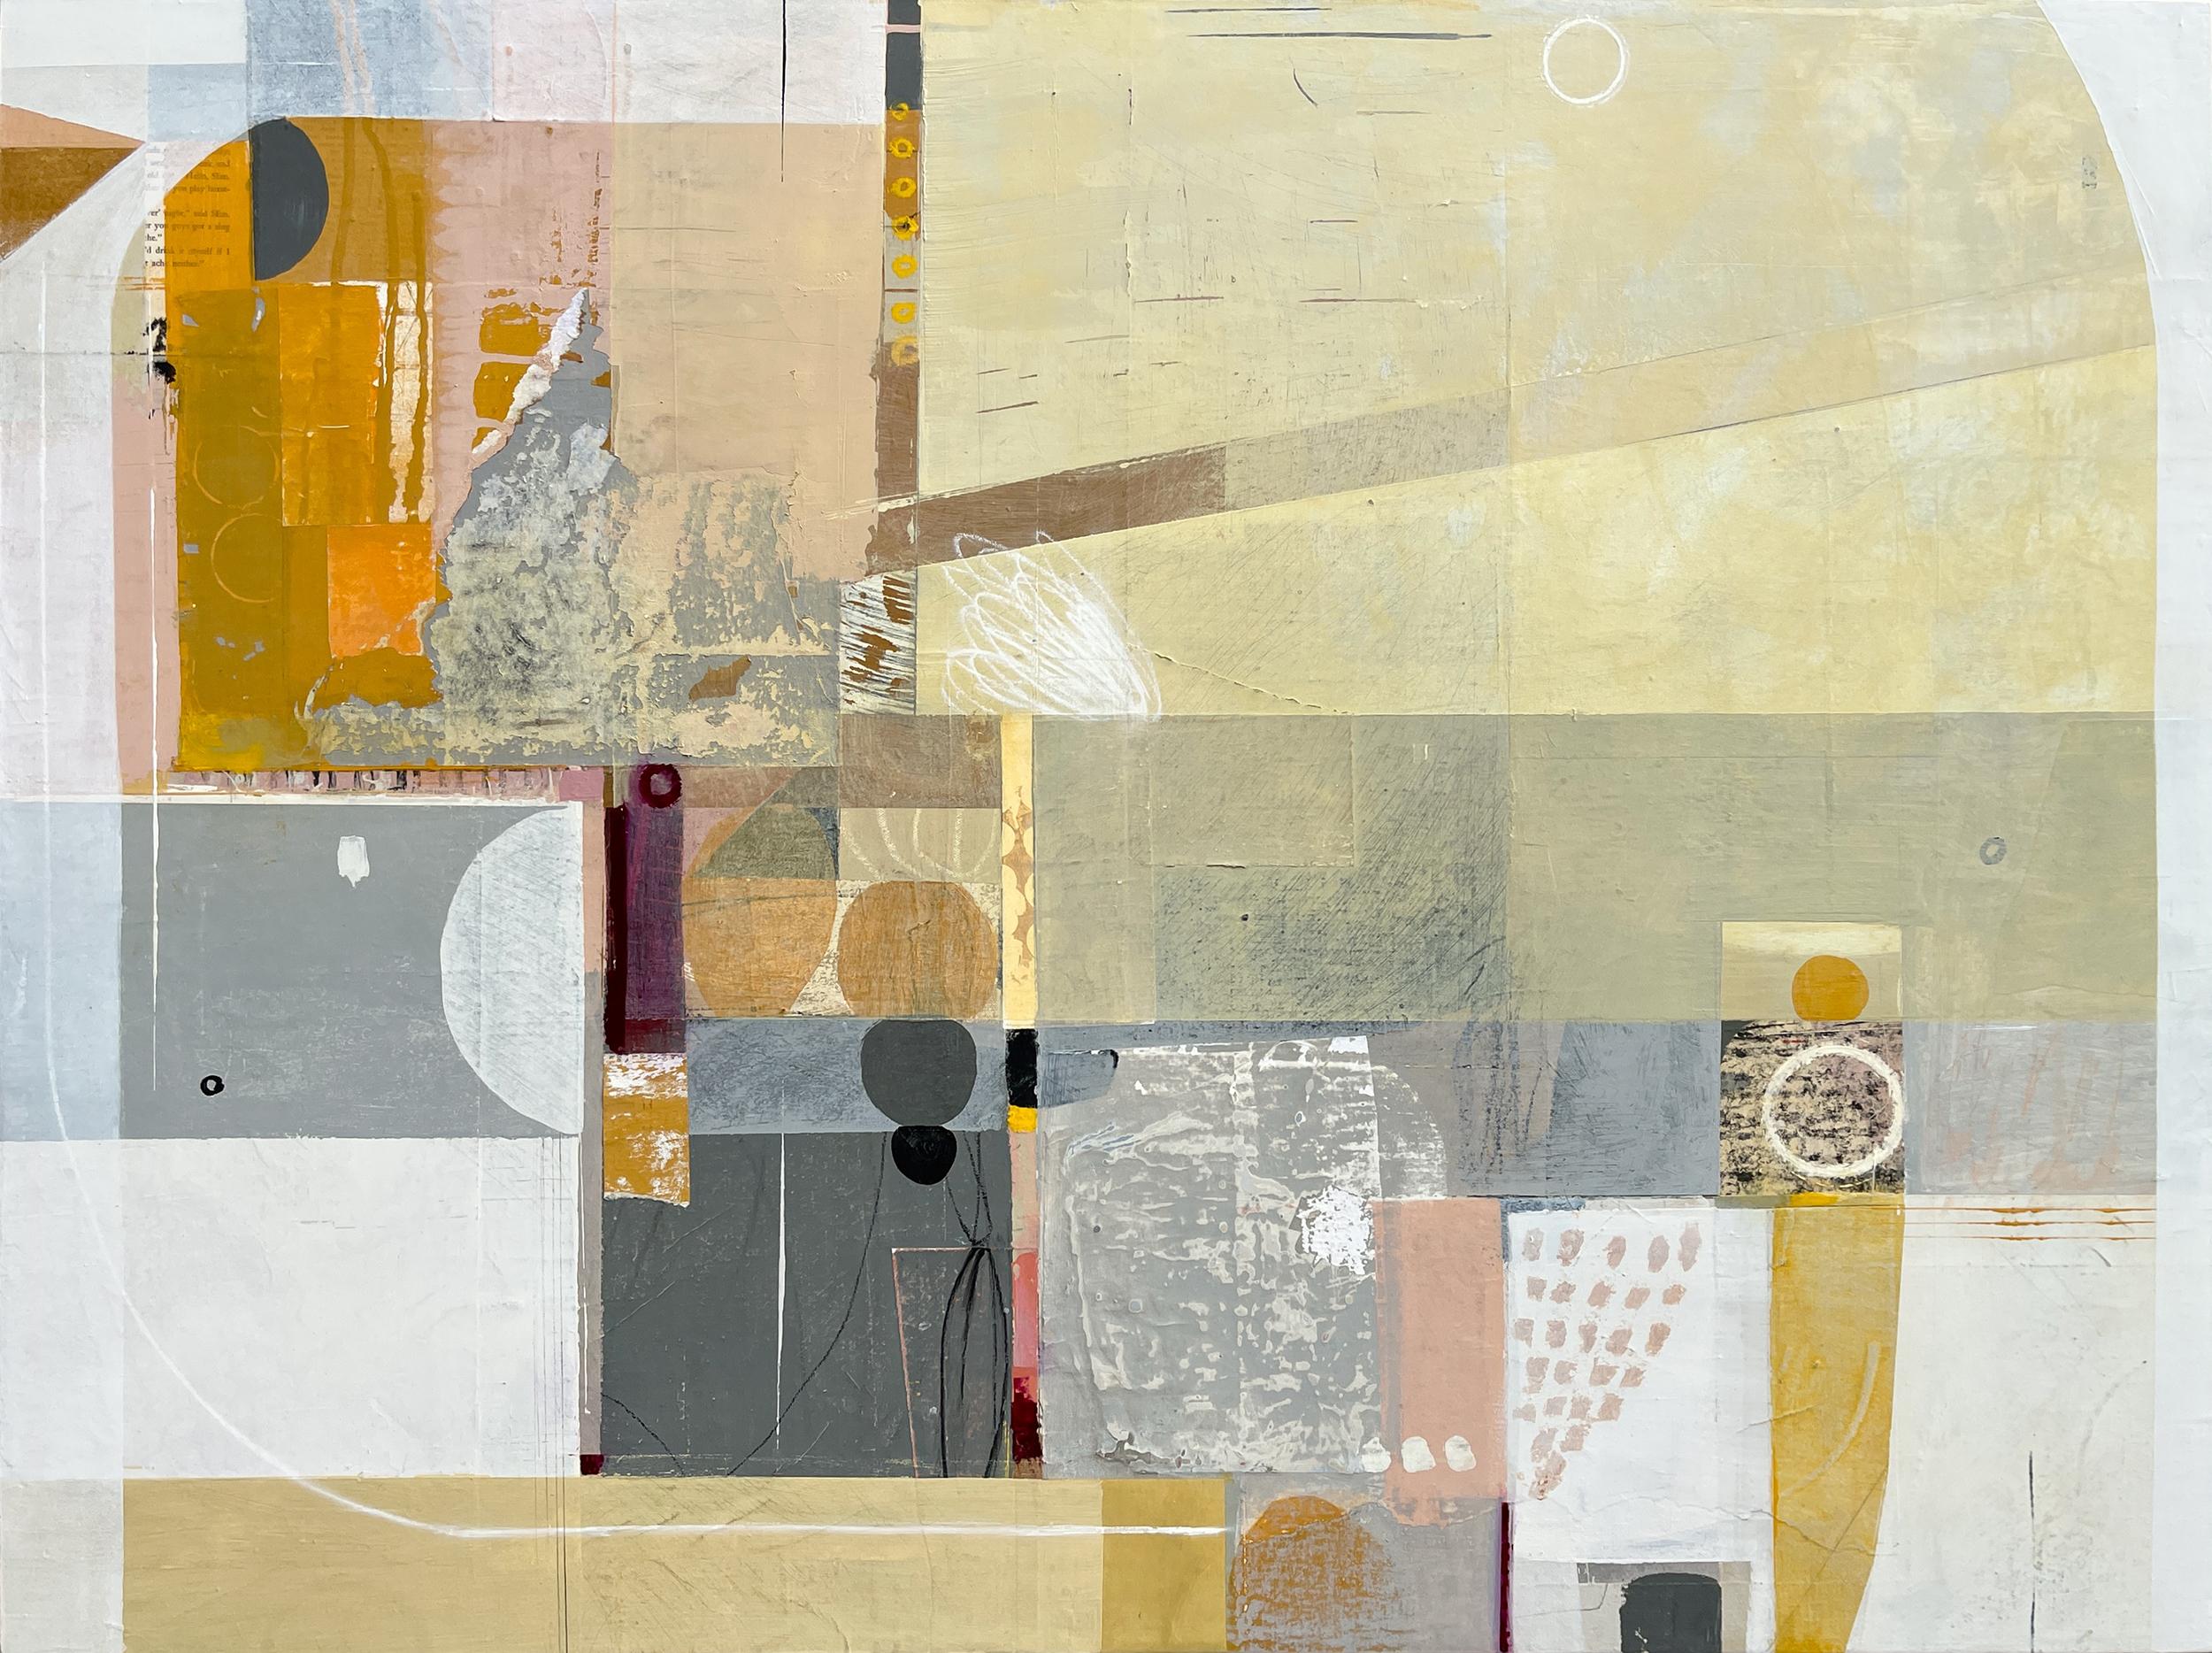 Abstract Painting Deborah T. Colter - Cardboard Sea - peinture abstraite jaune, gris et orange et collage sur panneau